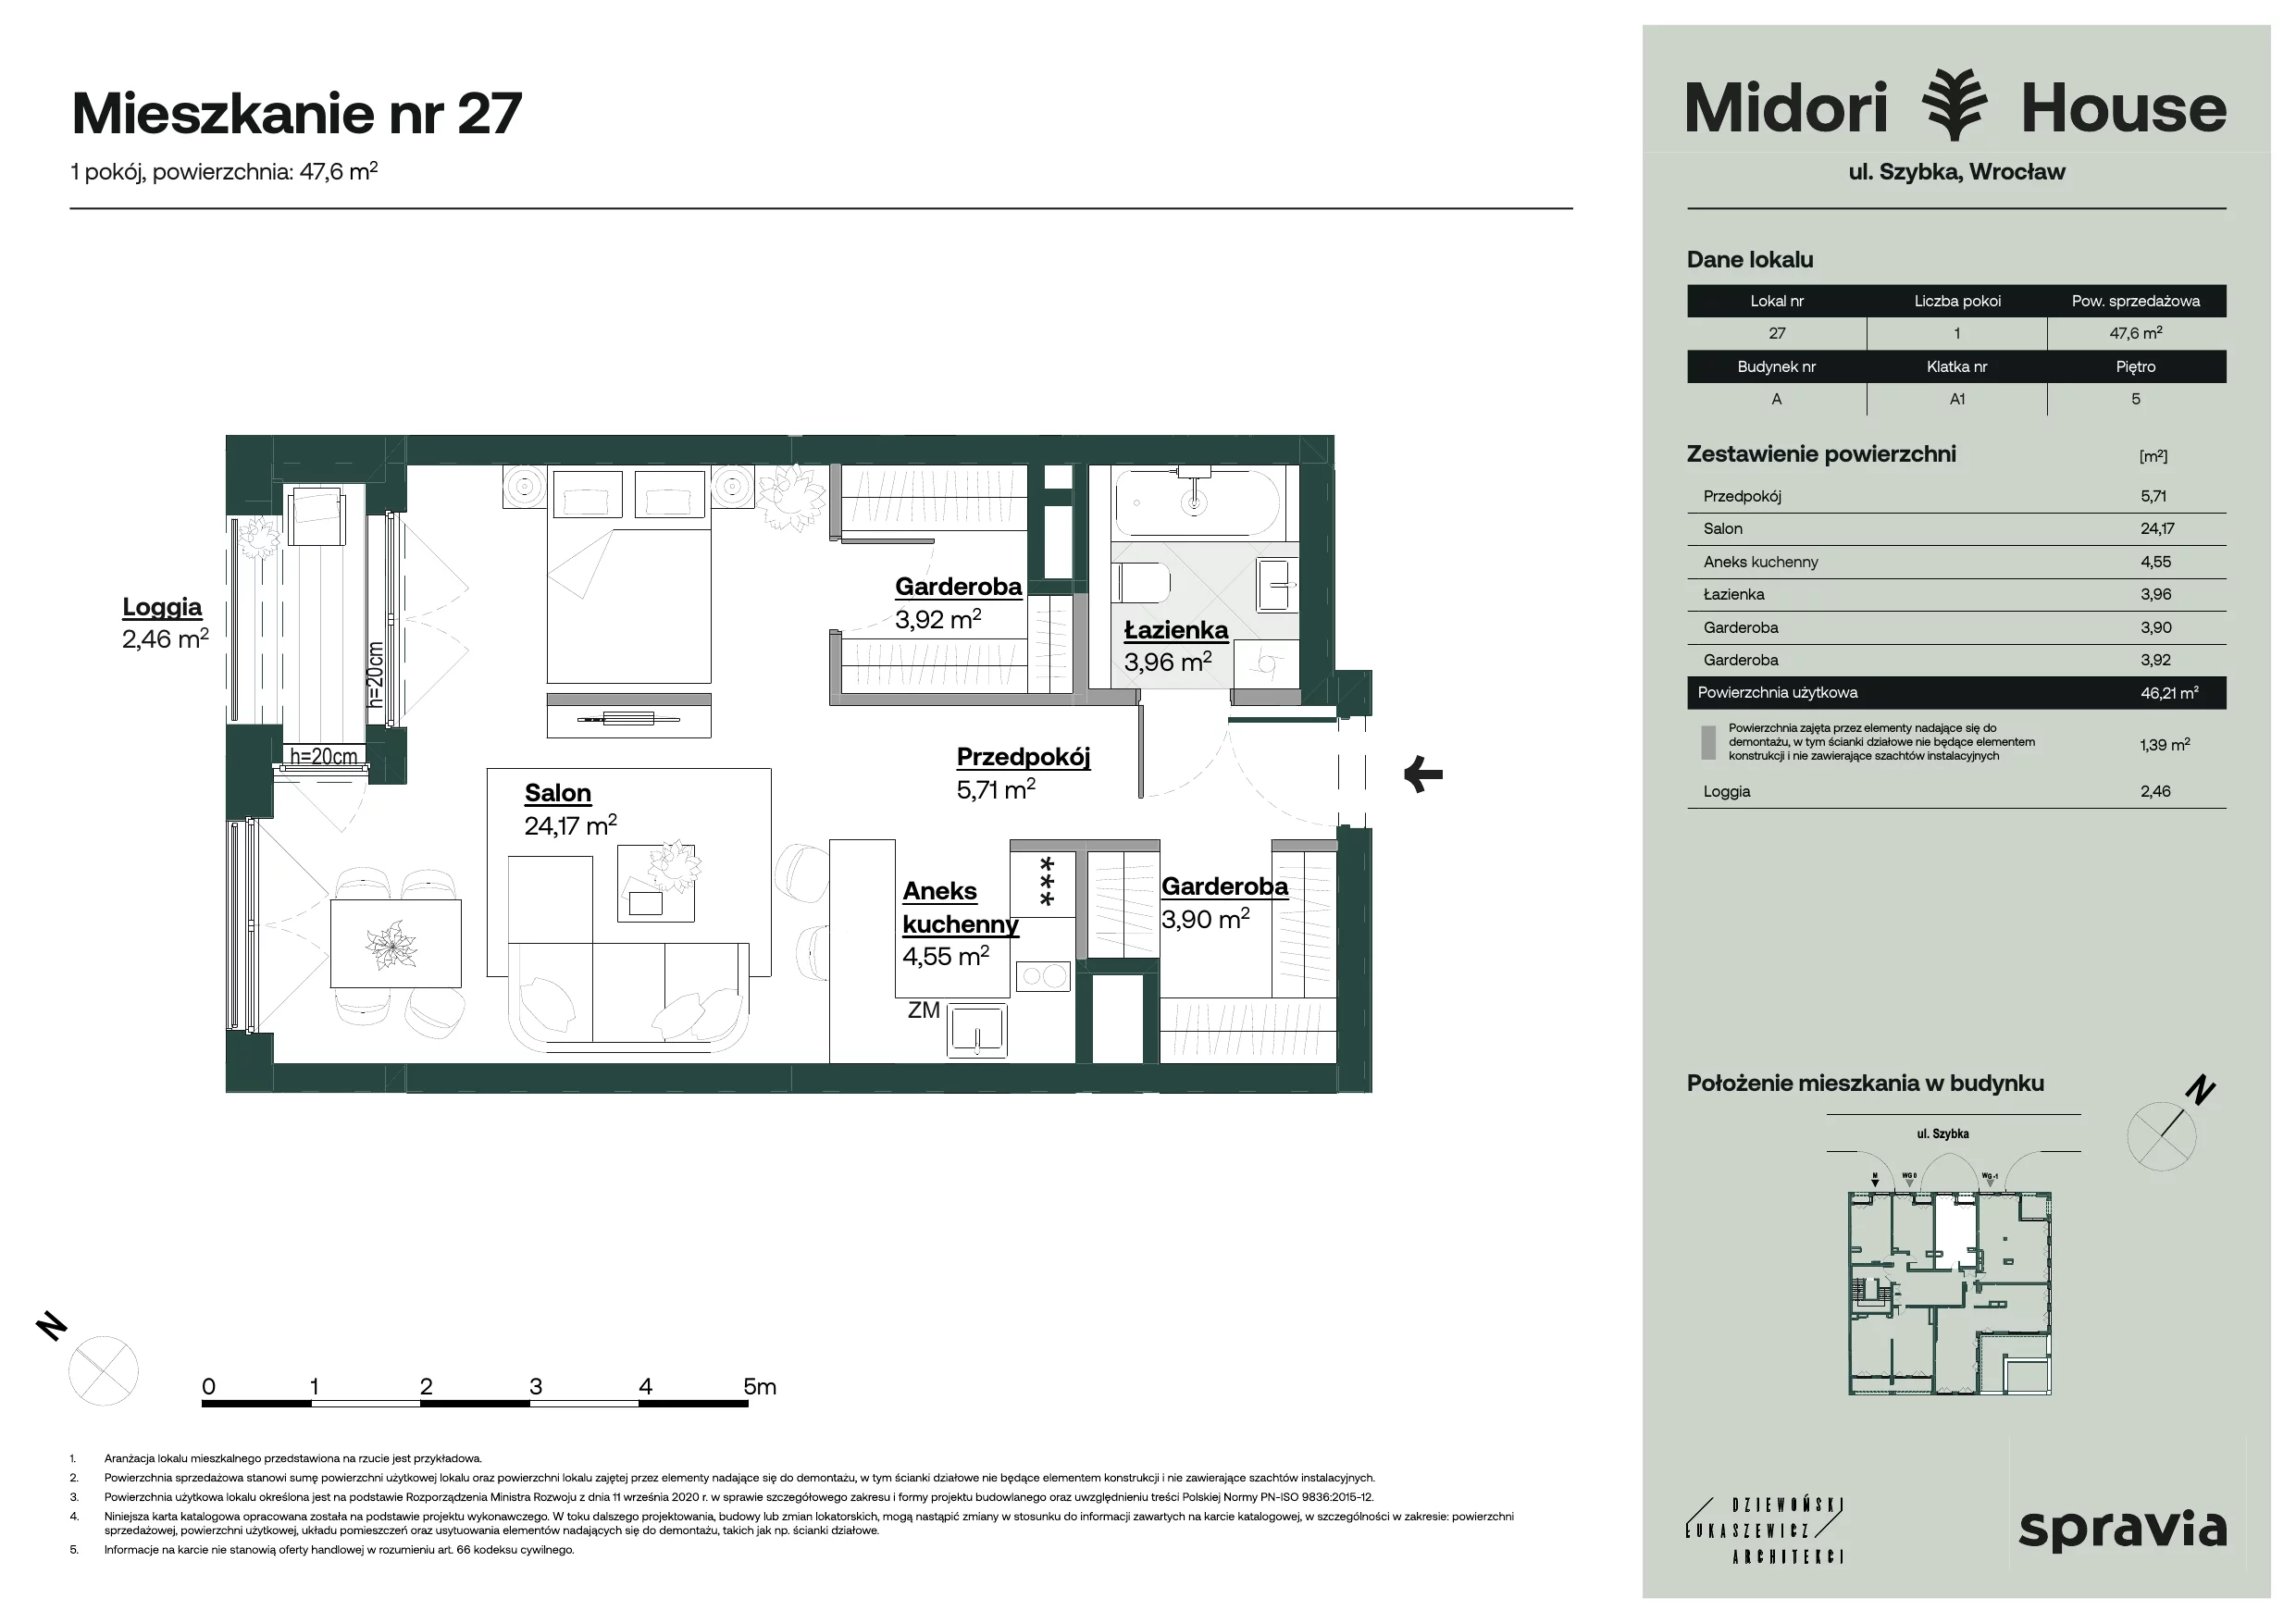 Apartament 47,60 m², piętro 5, oferta nr 27, Midori House, Wrocław, Przedmieście Oławskie, ul. Szybka 9